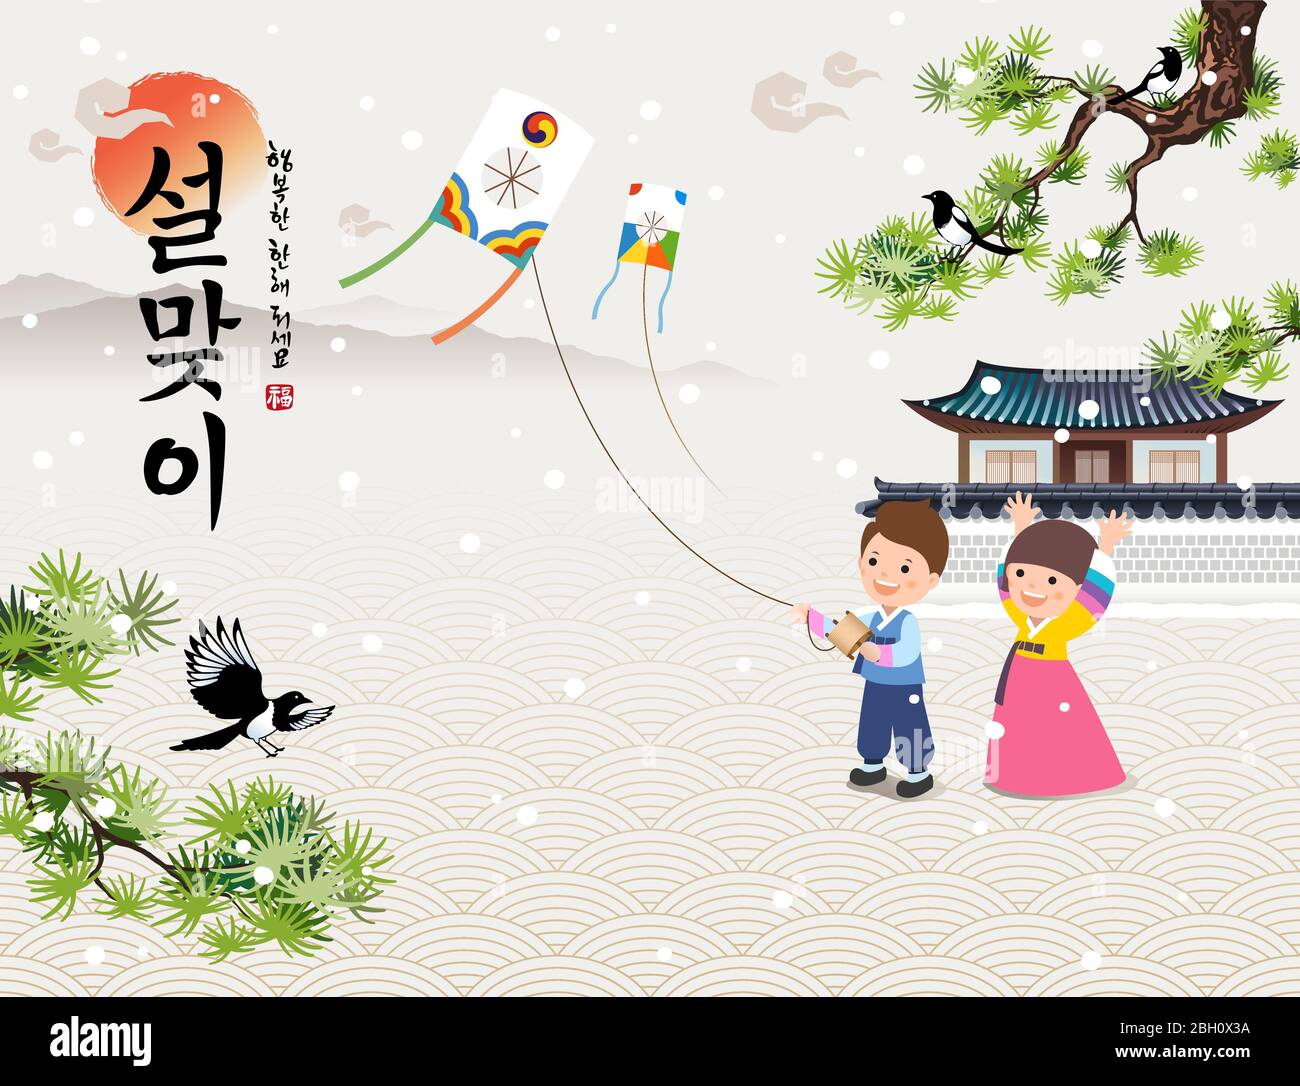 Koreanisches Neujahr. Pine, Hanok, koreanische traditionelle Landschaft, Kinder fliegen Drachen. Frohes neues Jahr, koreanische Übersetzung. Stock Vektor